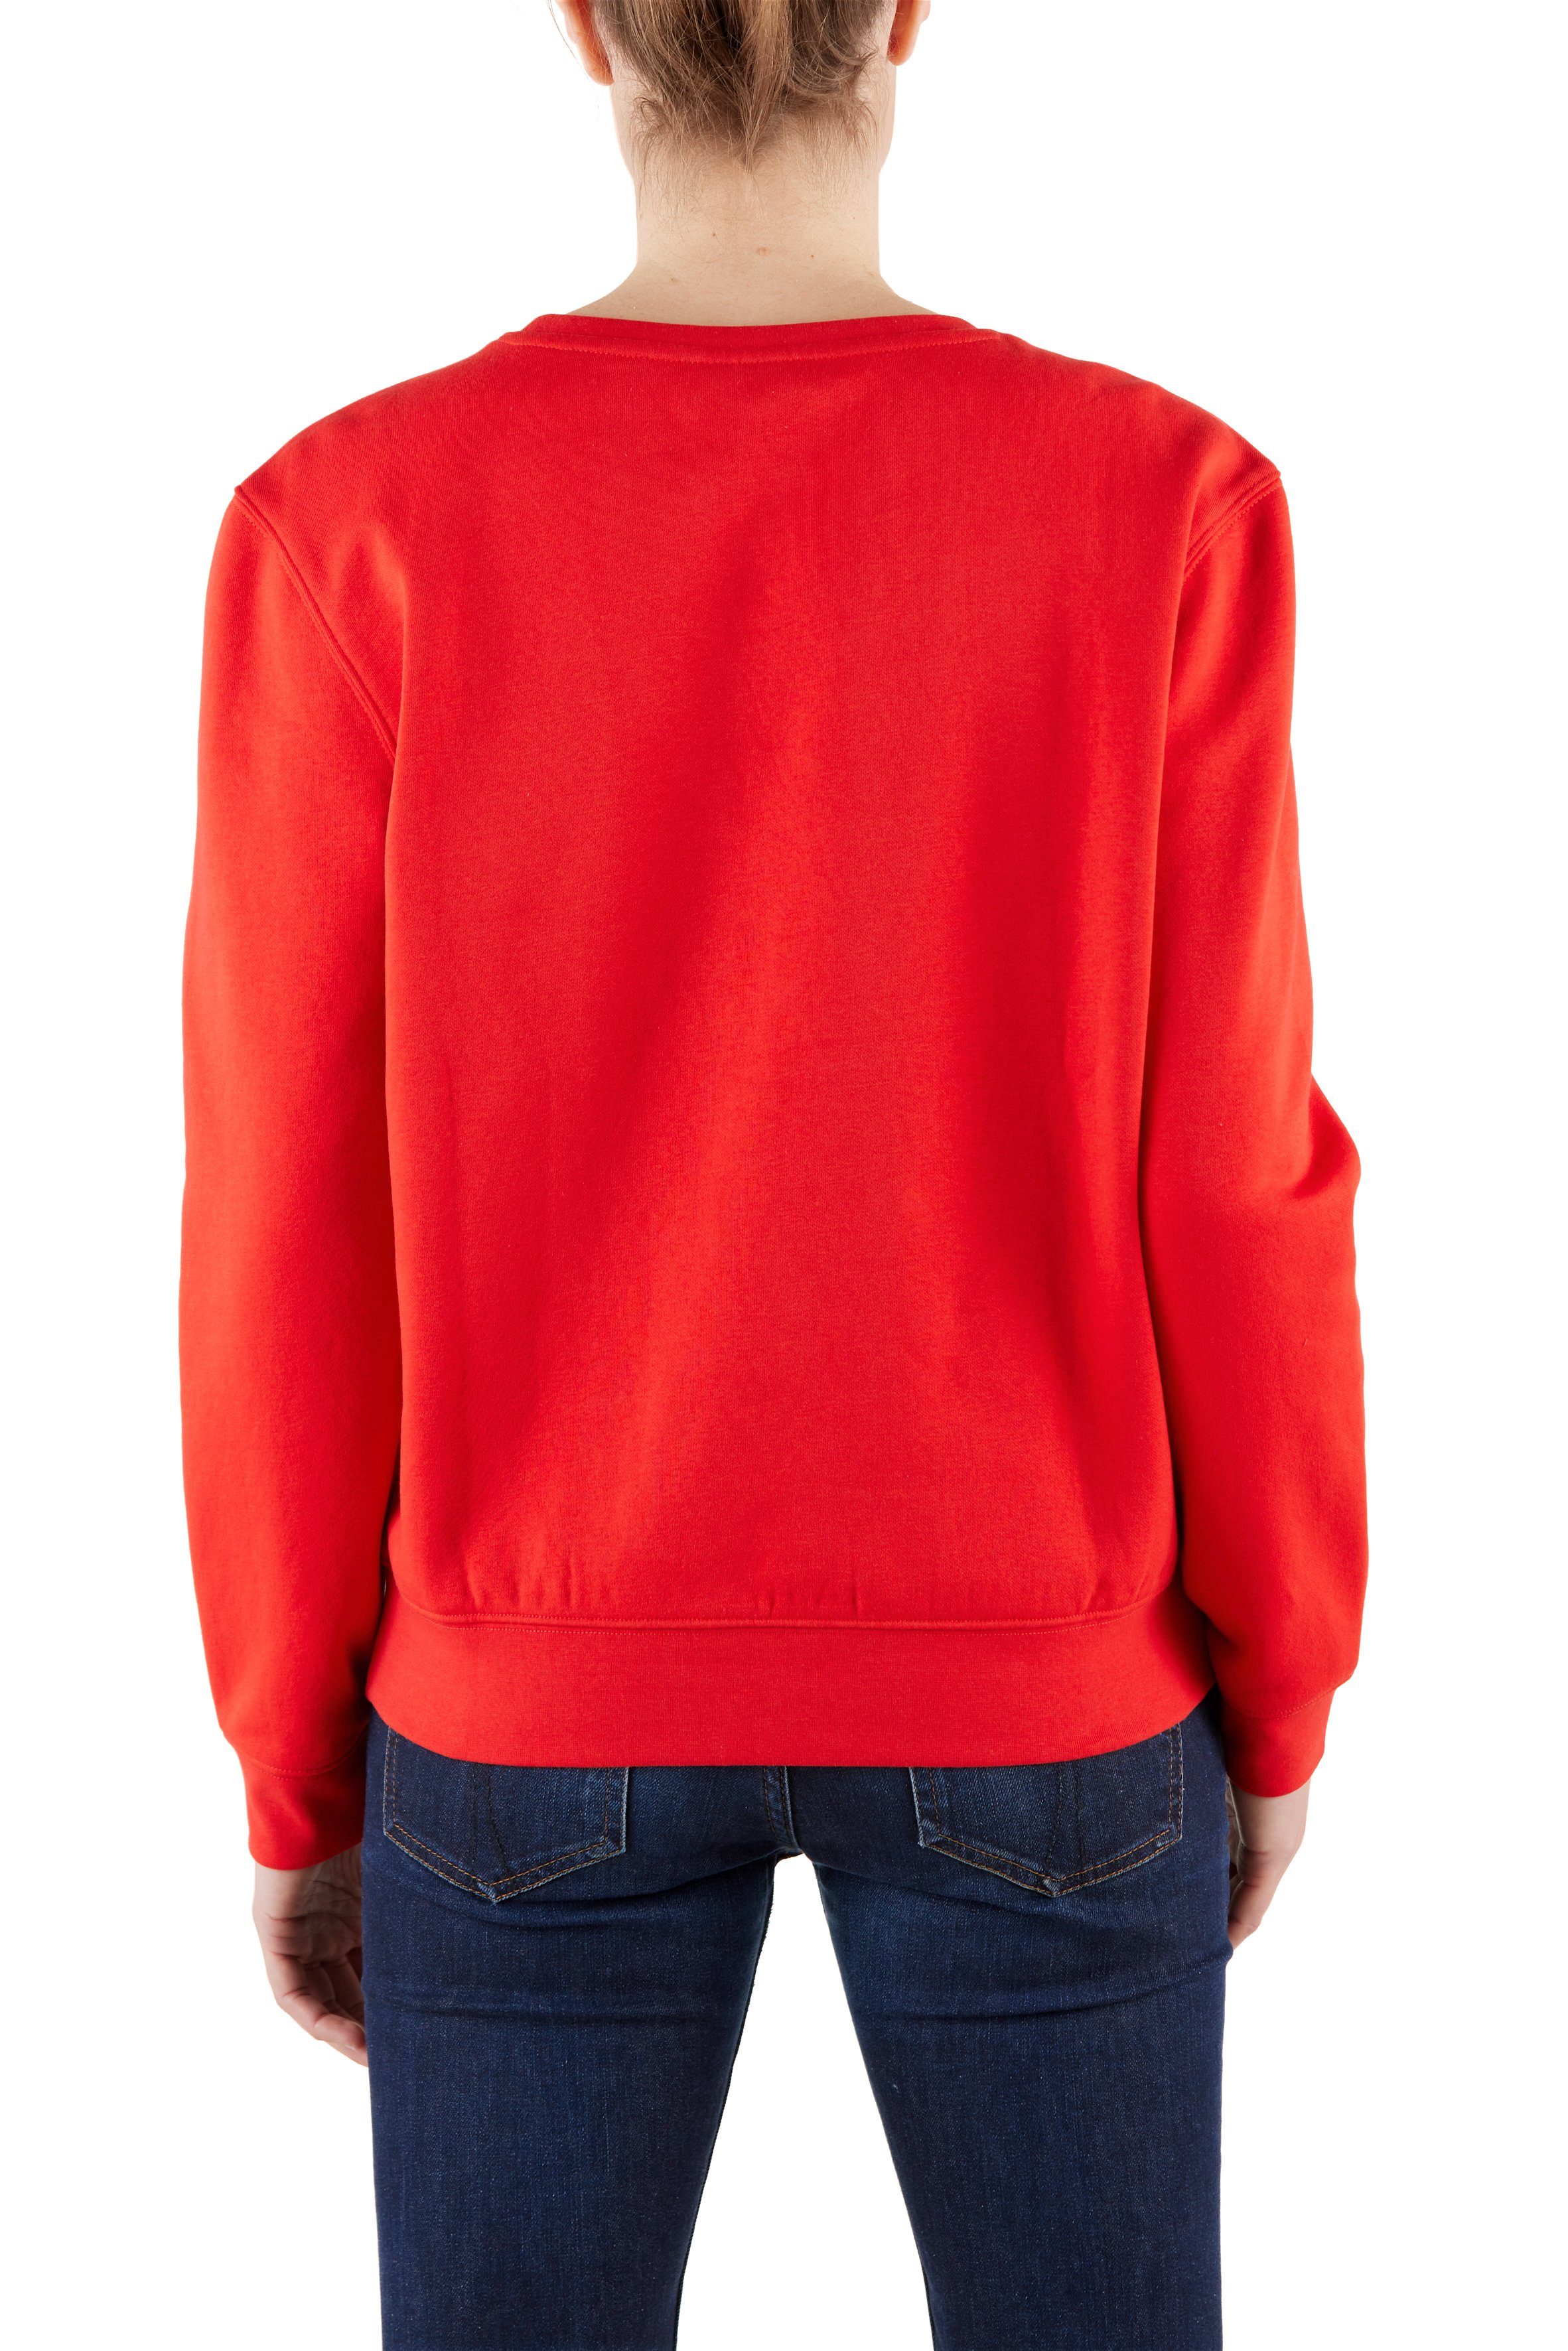 Northern Country Sweatshirt für Red Baumwollmix, sich trägt soften Fiery locker Damen und leicht aus